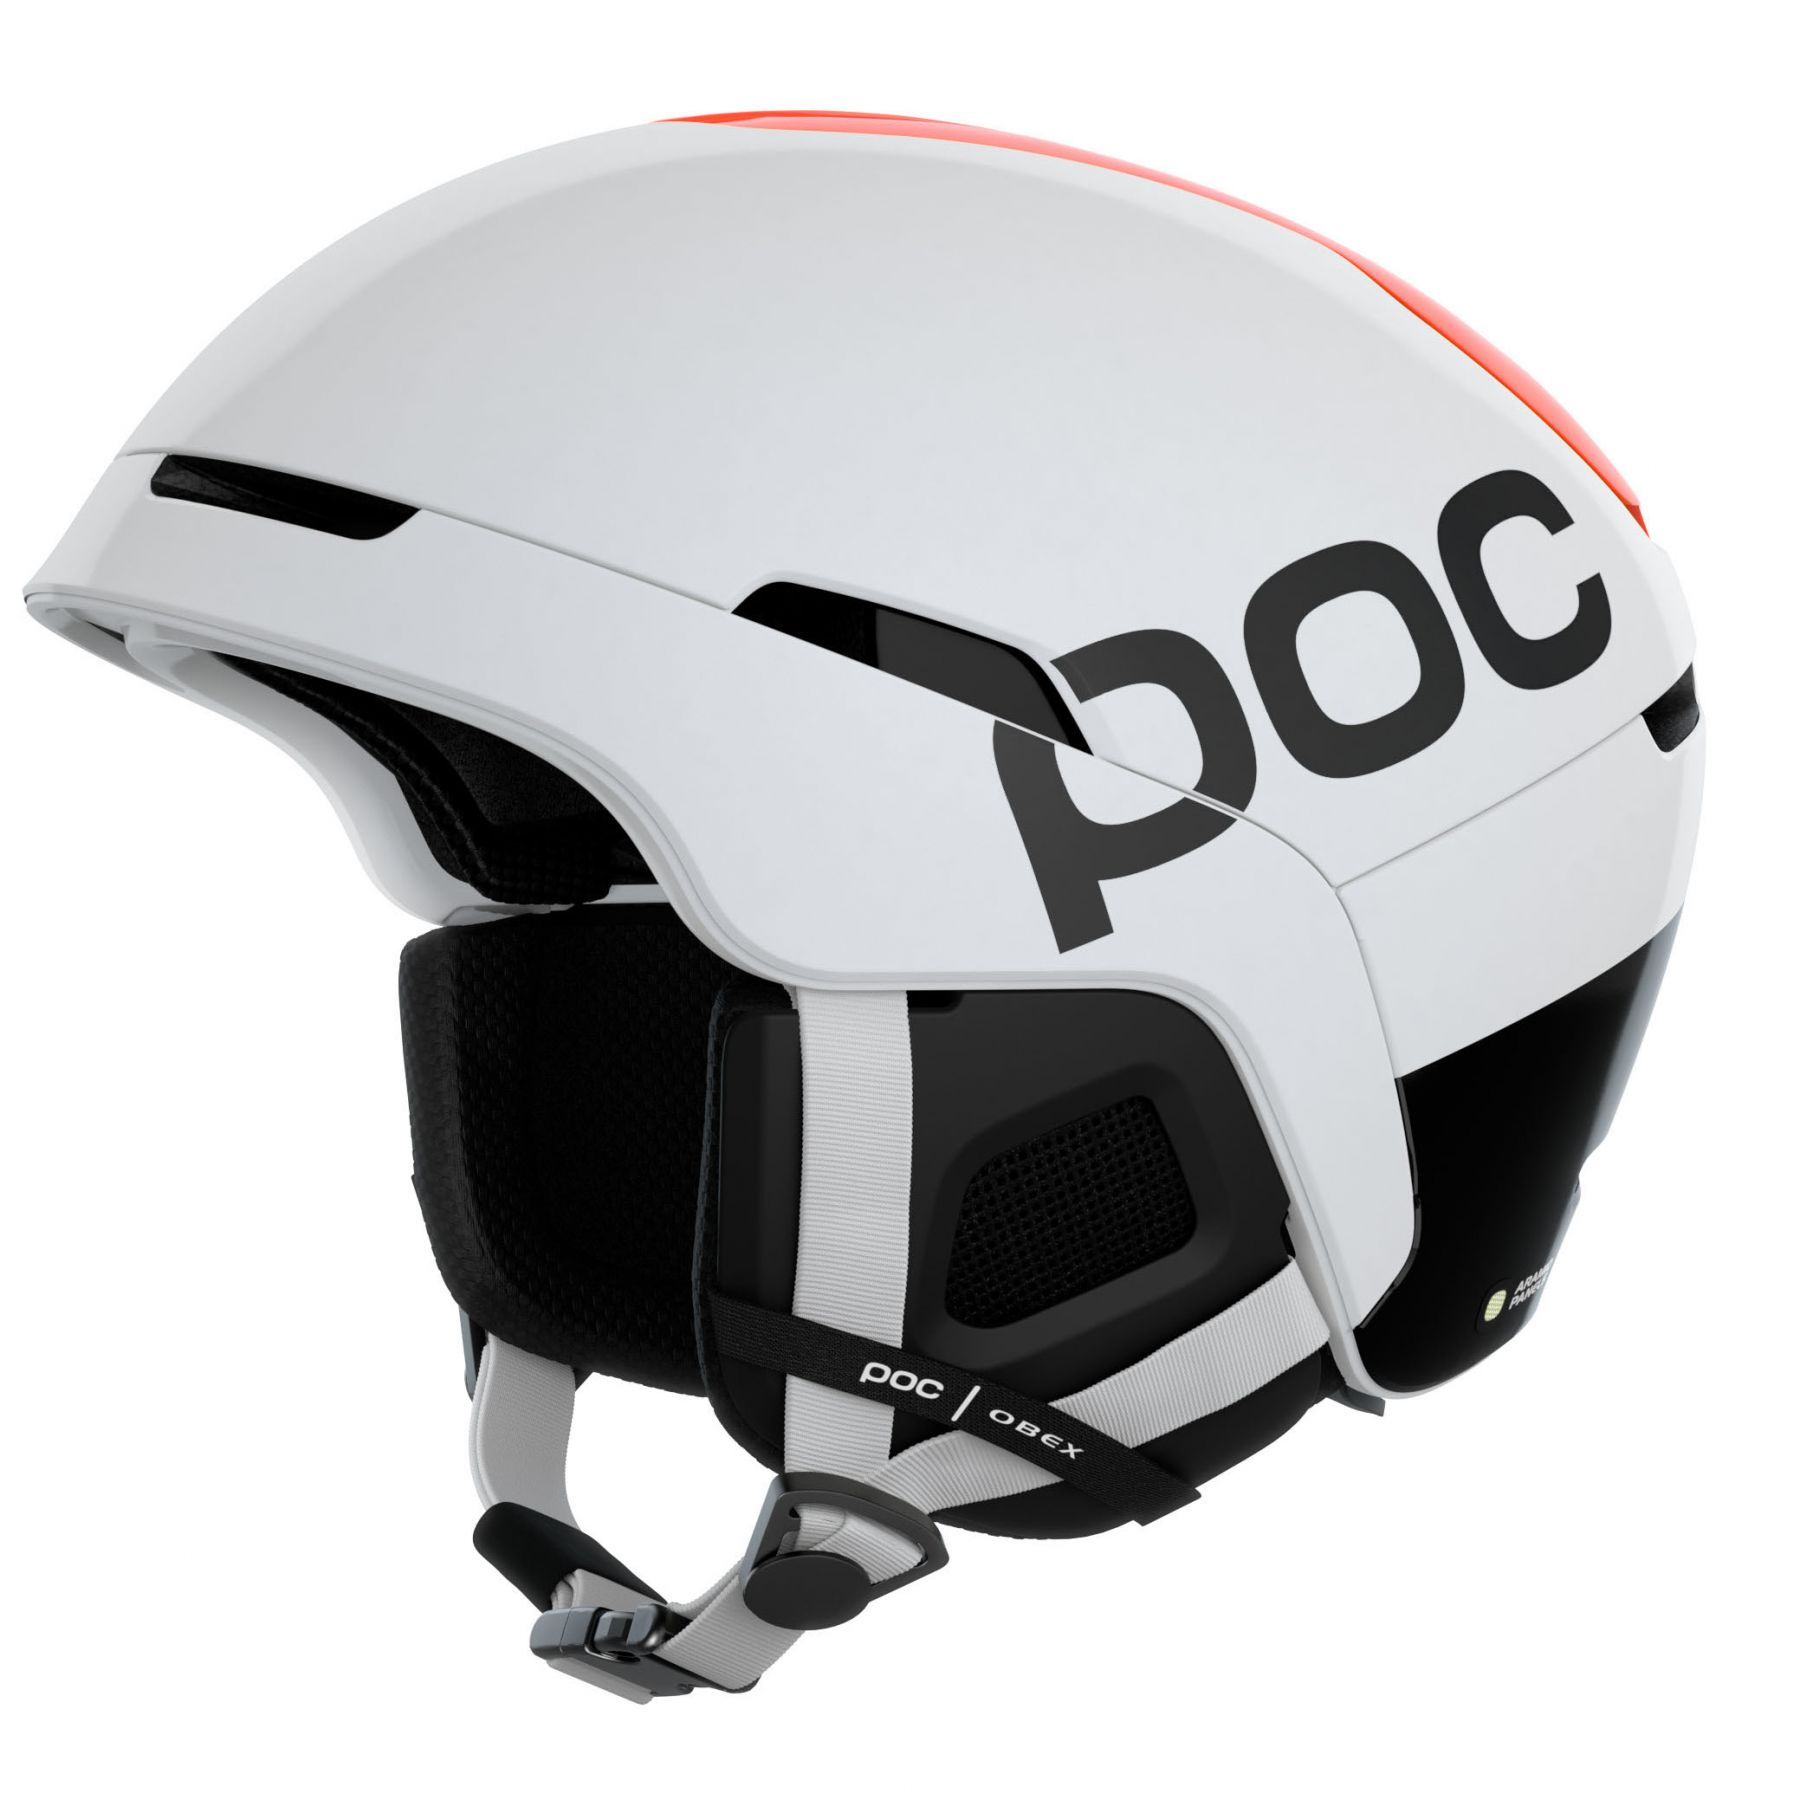 Brug POC Obex BC Mips, skihjelm, hvid til en forbedret oplevelse